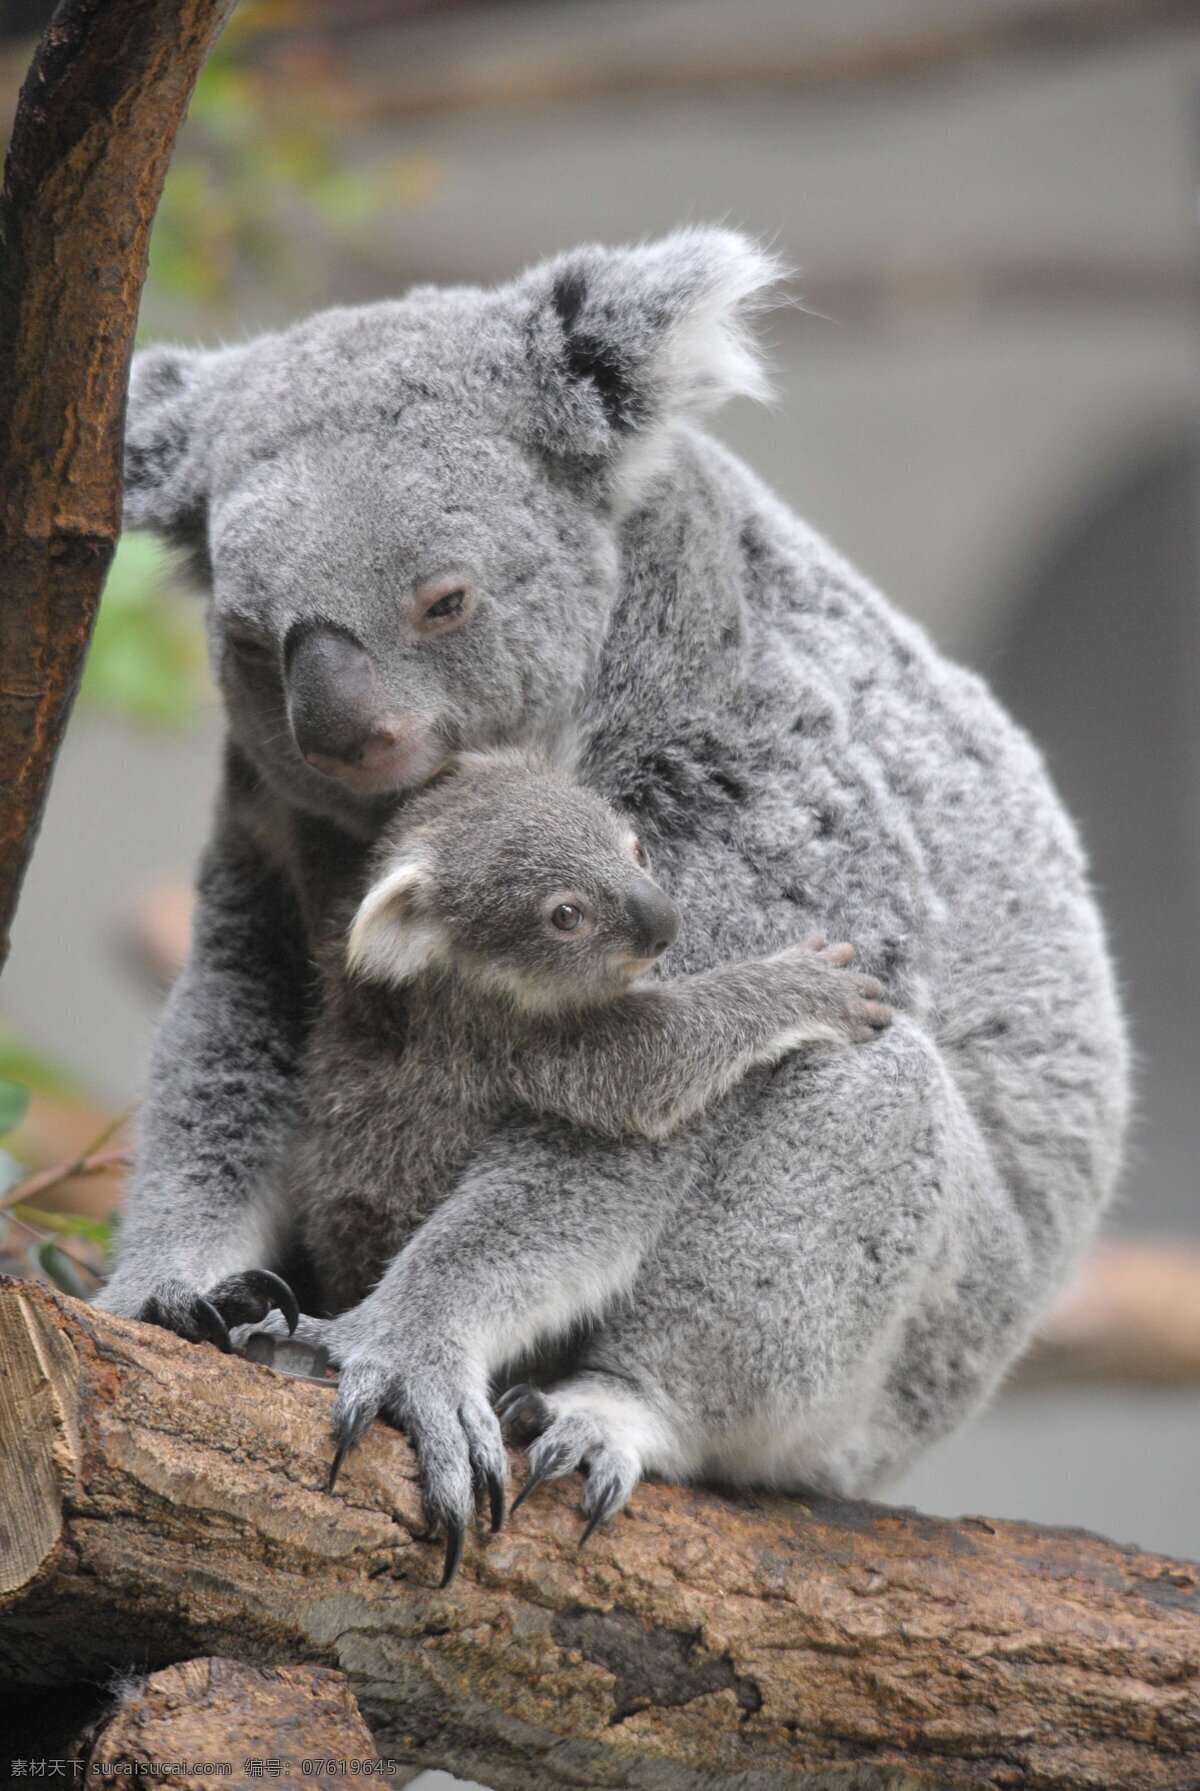 可爱 考拉 实拍 照片 动物 拍摄 高清 珍惜动物 澳大利亚 动物世界 野生动物 生物世界 图